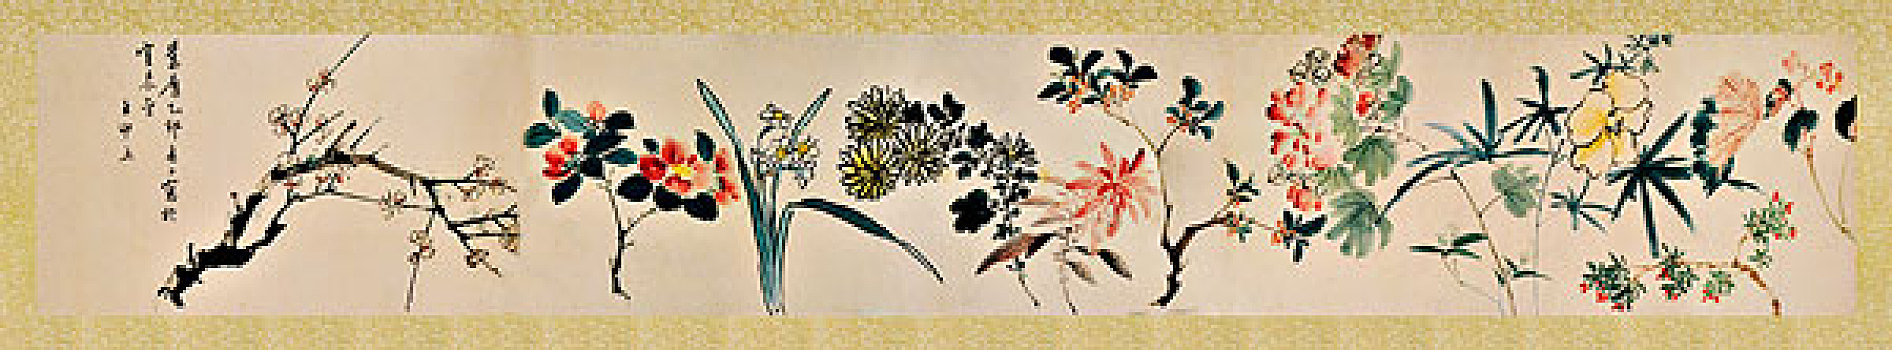 古画,花卉图,王中立,朝代不详